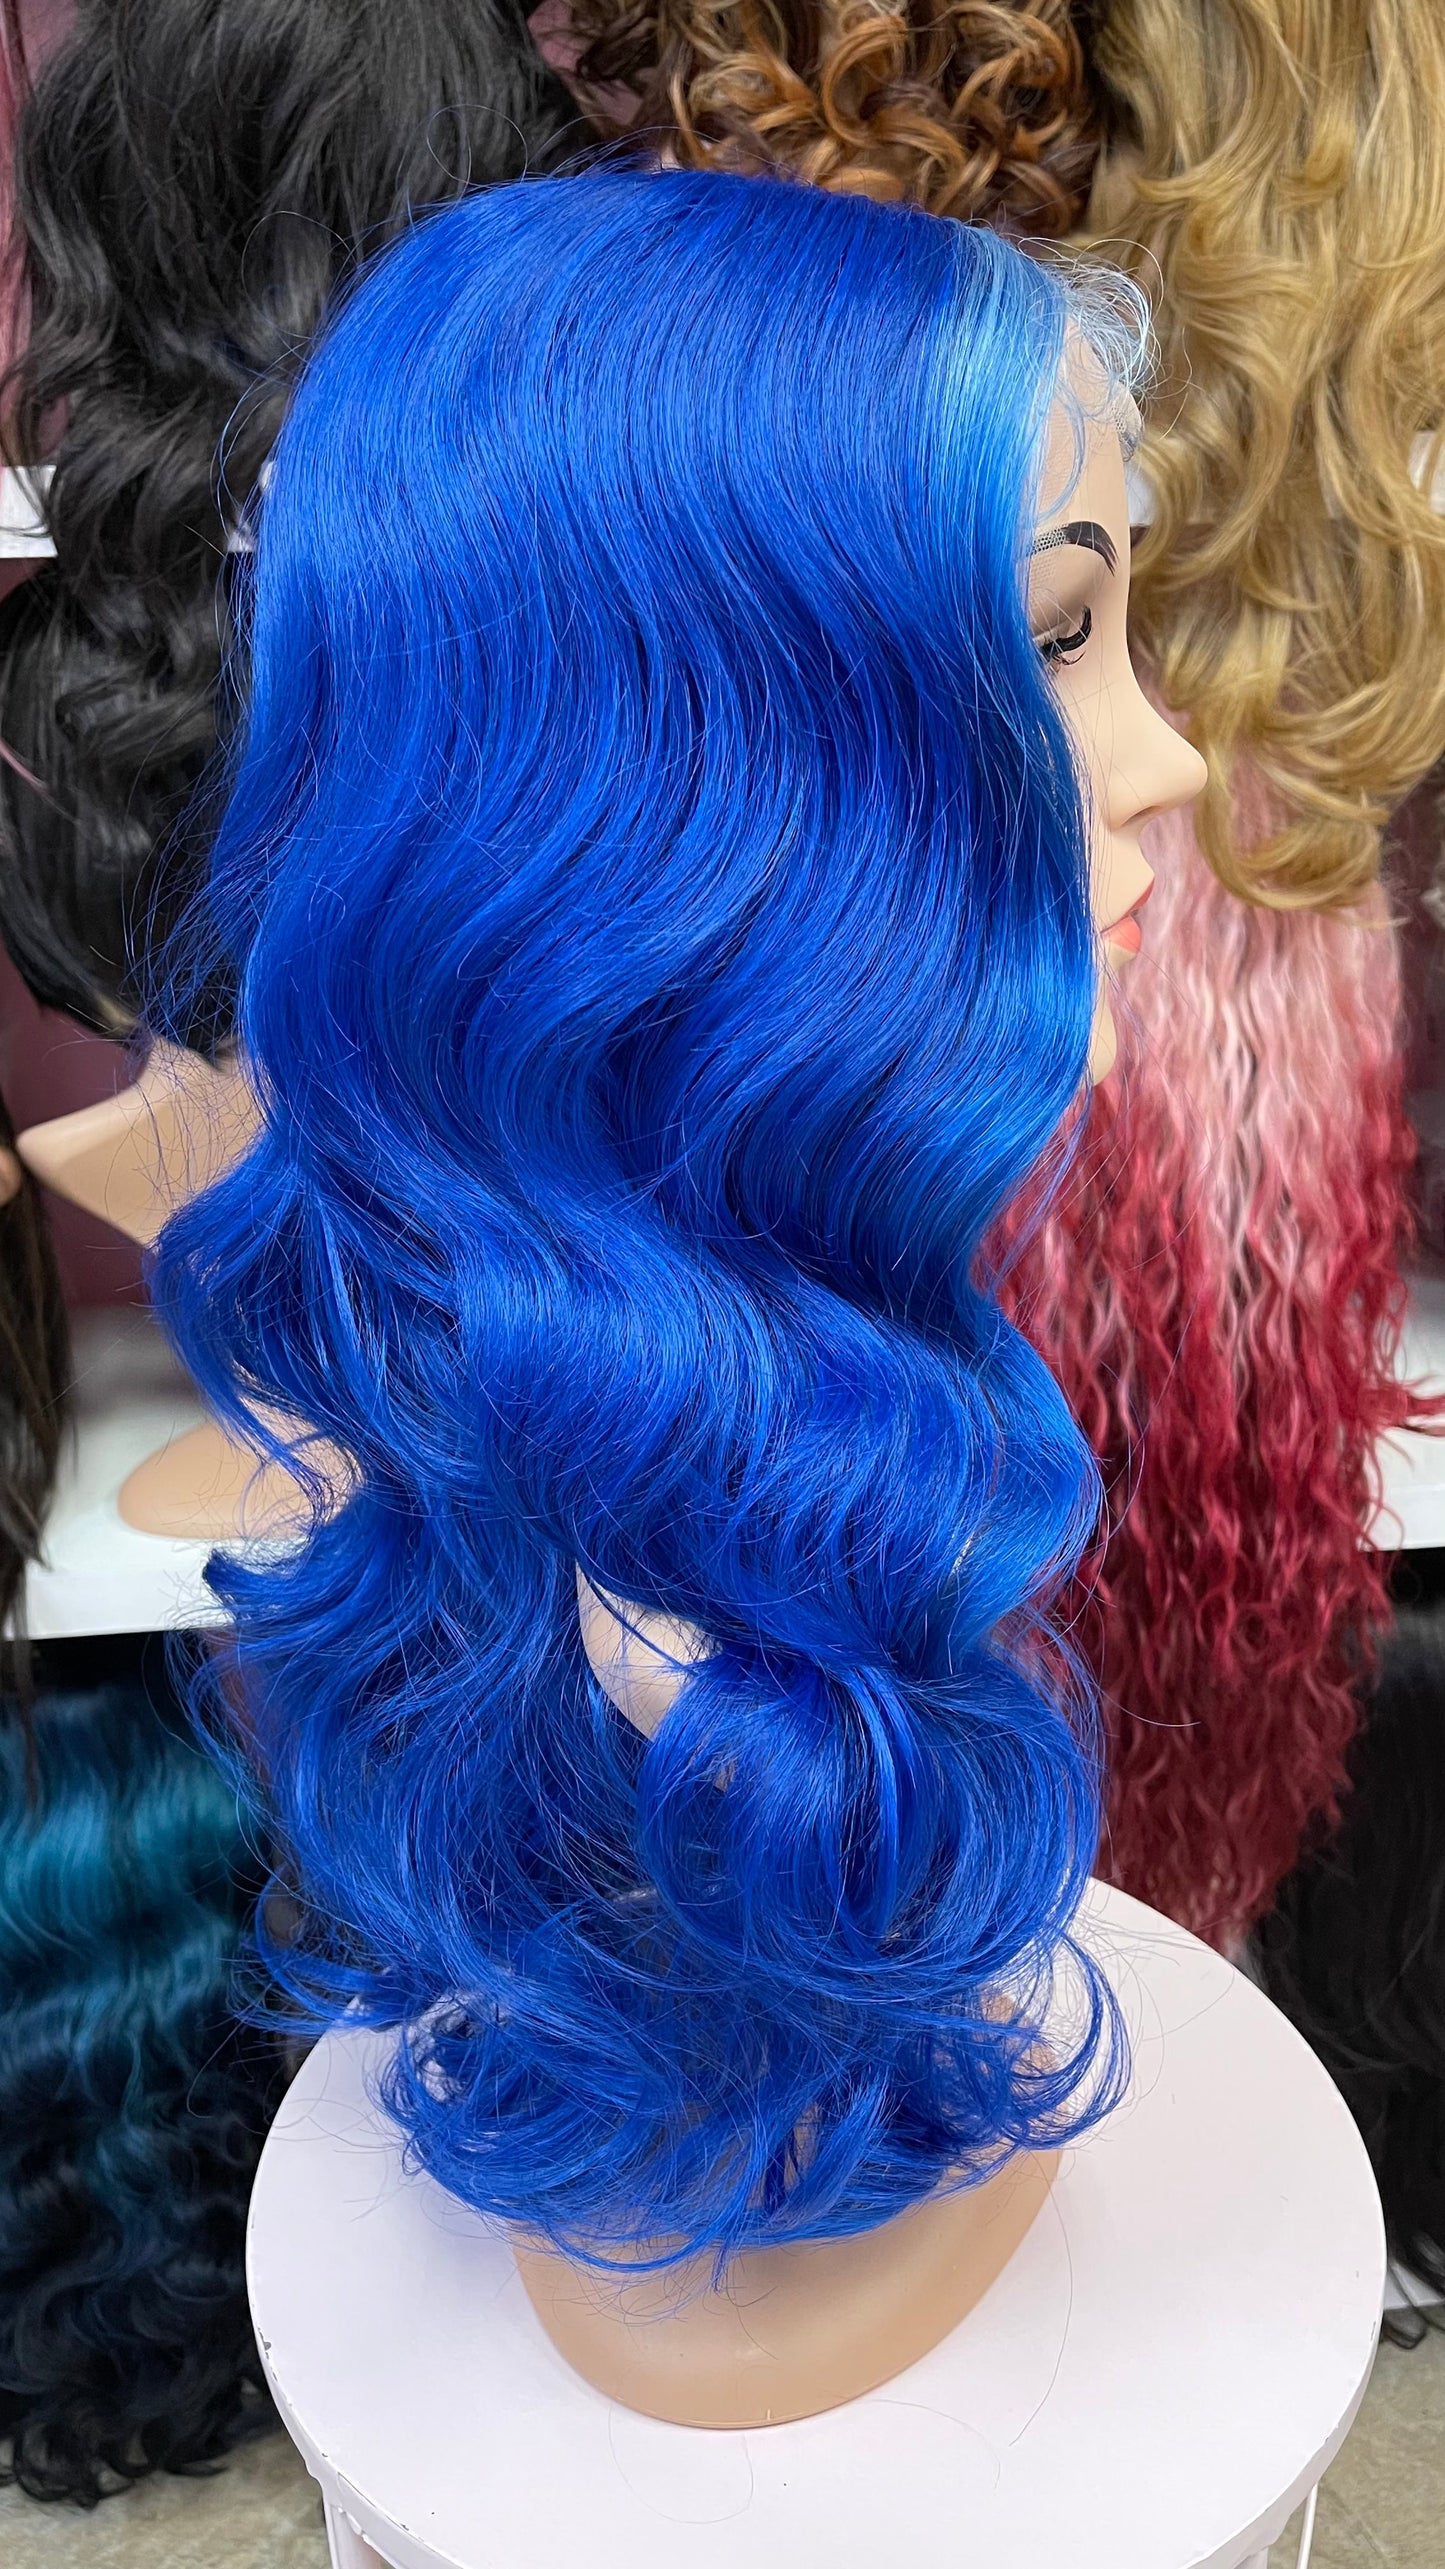 114 Jasmine - Middle Part Lace Front Wig - L.BLUE - DaizyKat Cosmetics 114 Jasmine - Middle Part Lace Front Wig - L.BLUE DaizyKat Cosmetics Wigs